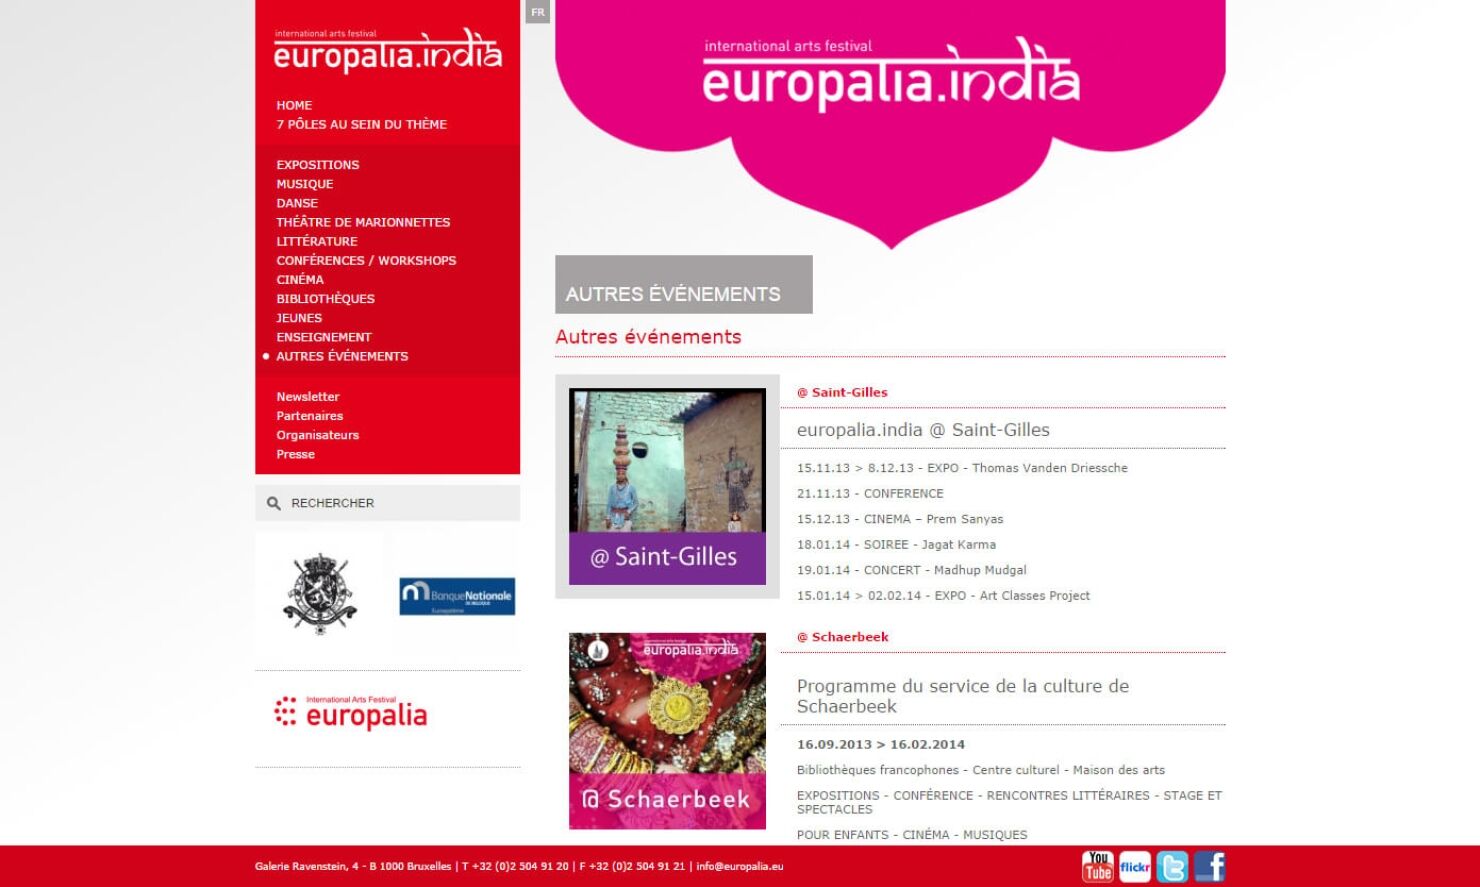 europalia-india-events.jpg